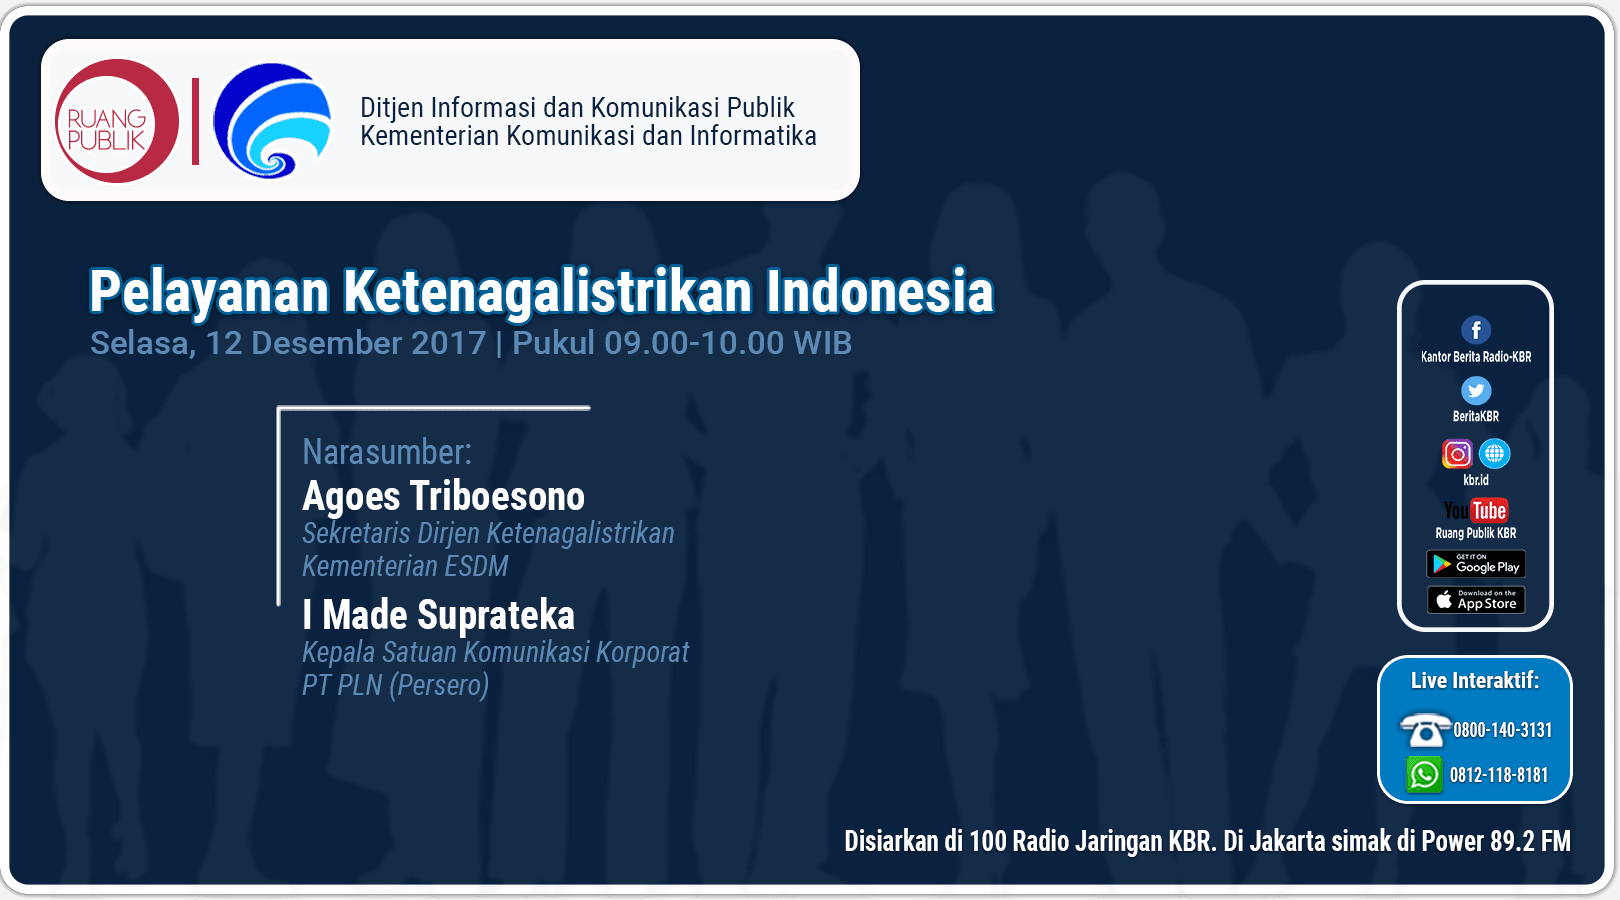 Bagaimana Pelayanan Listrik di Indonesia sekarang ini?